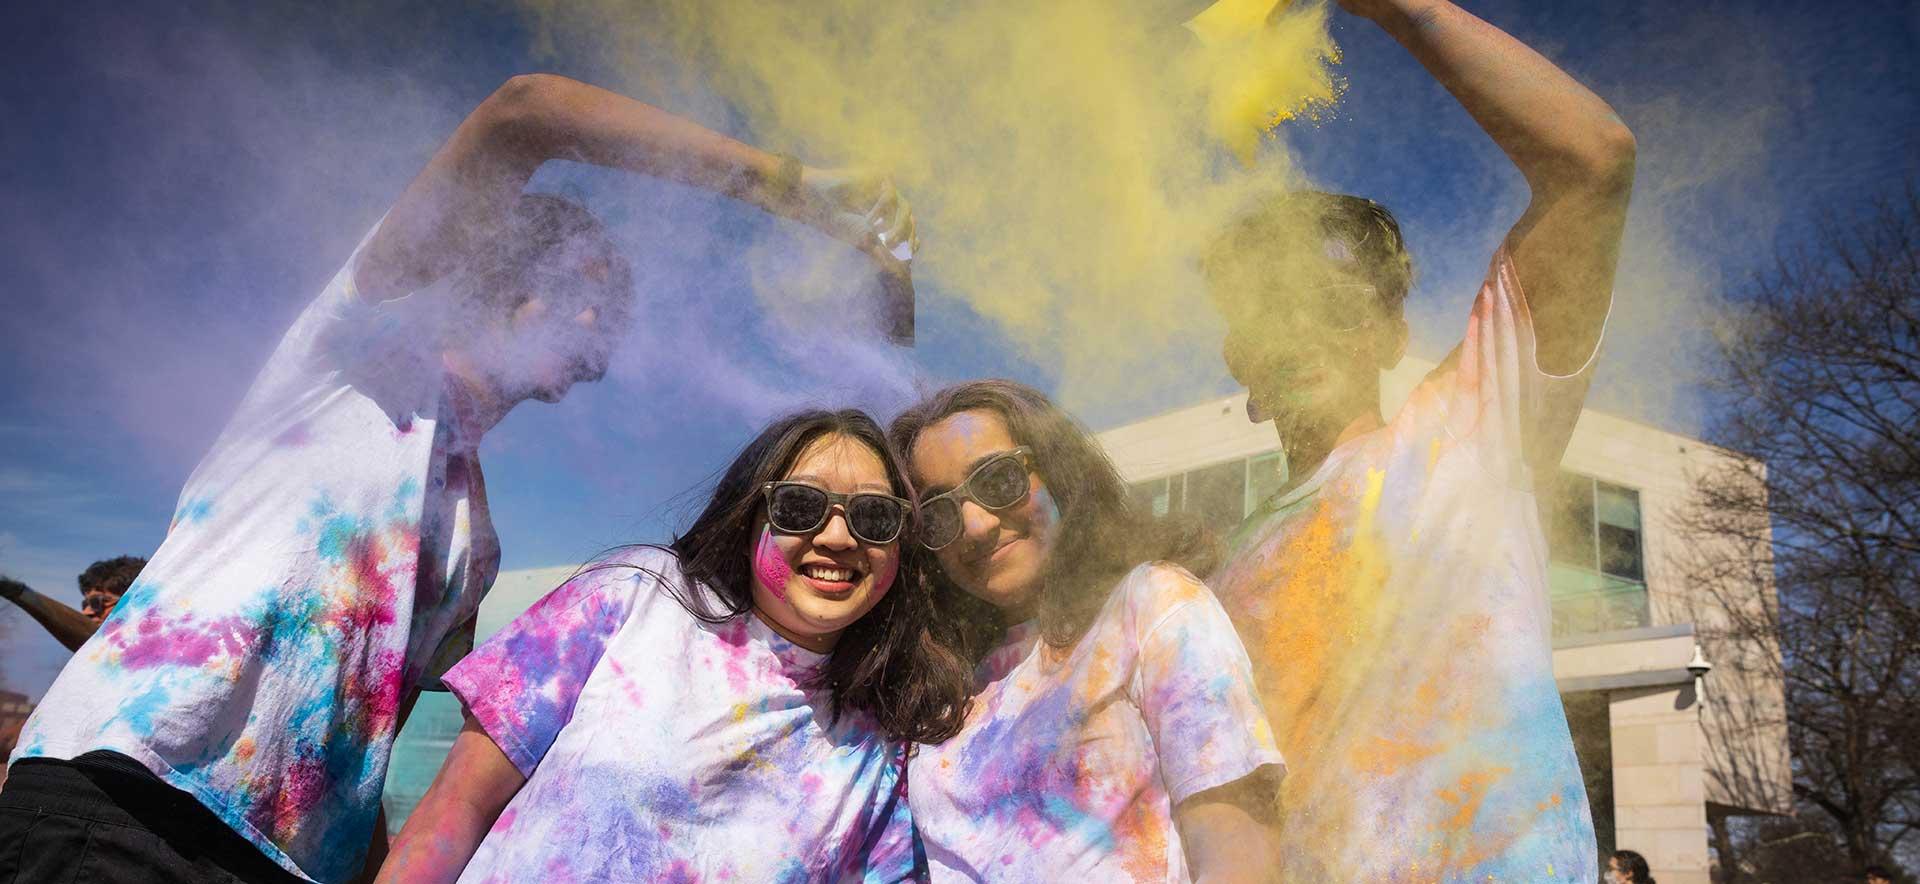 在印度庆祝胡里节期间，笑容满面的365betapp学生身上涂满了颜料